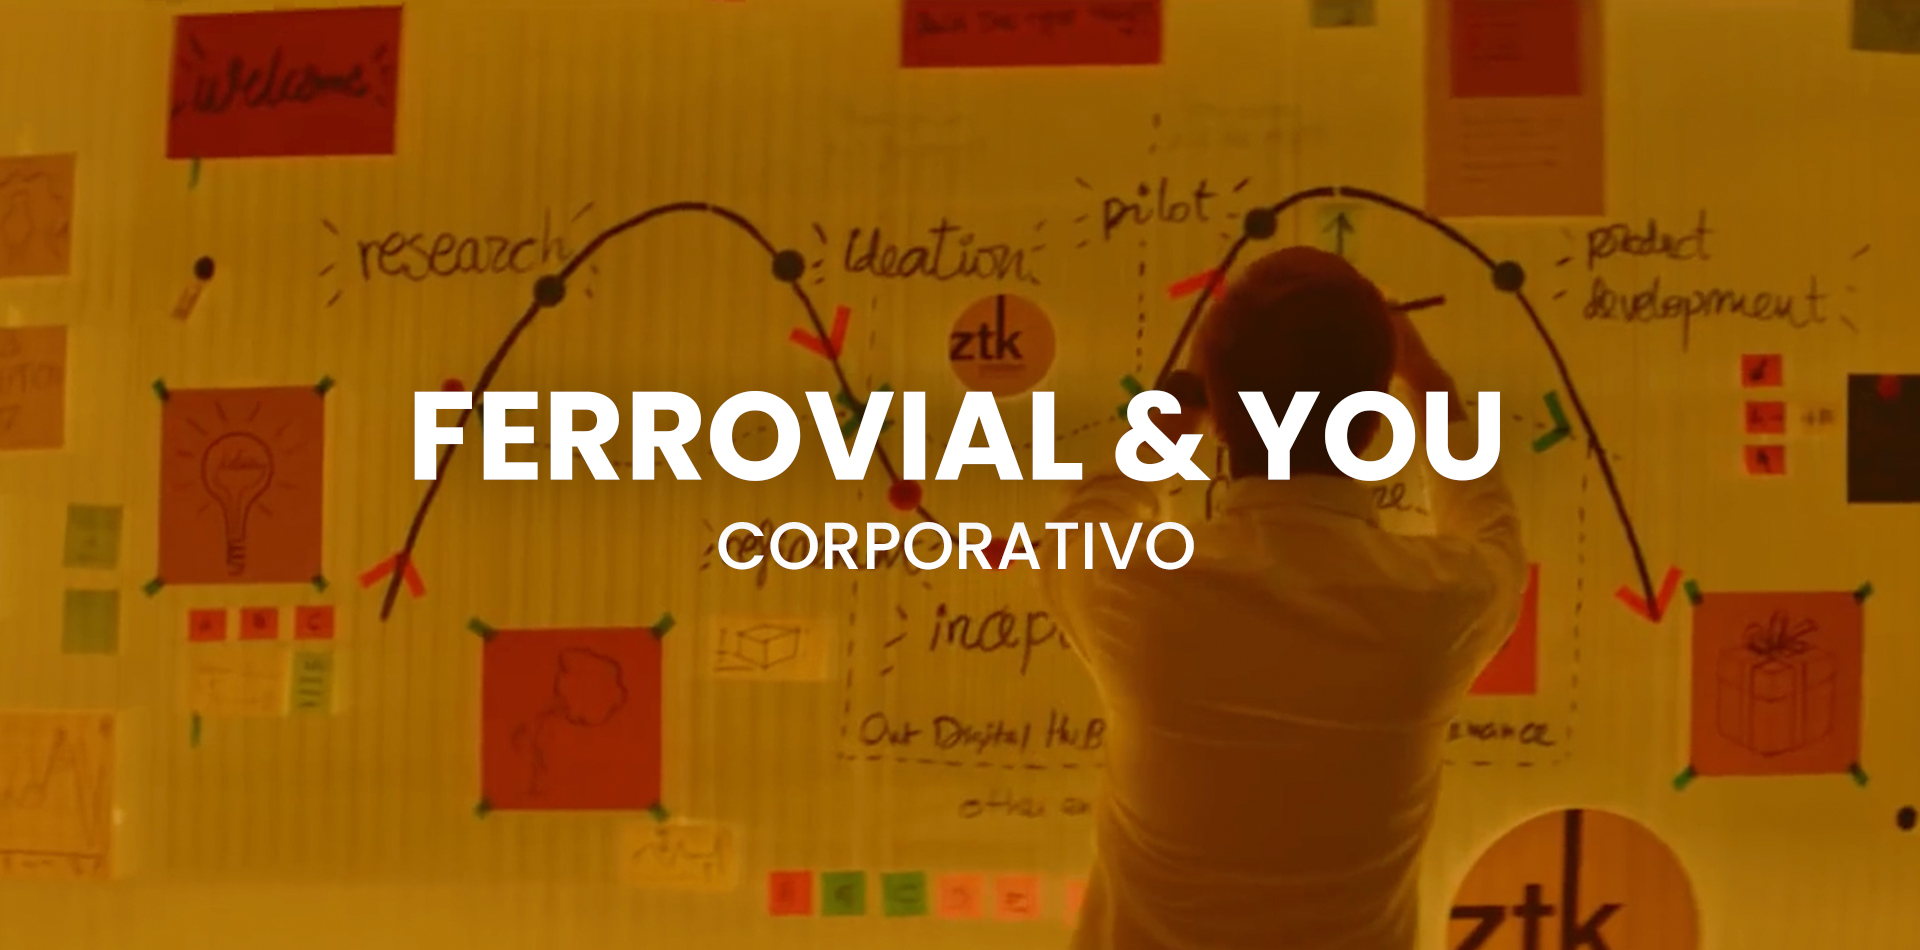 Ferrovial & You Corporativo